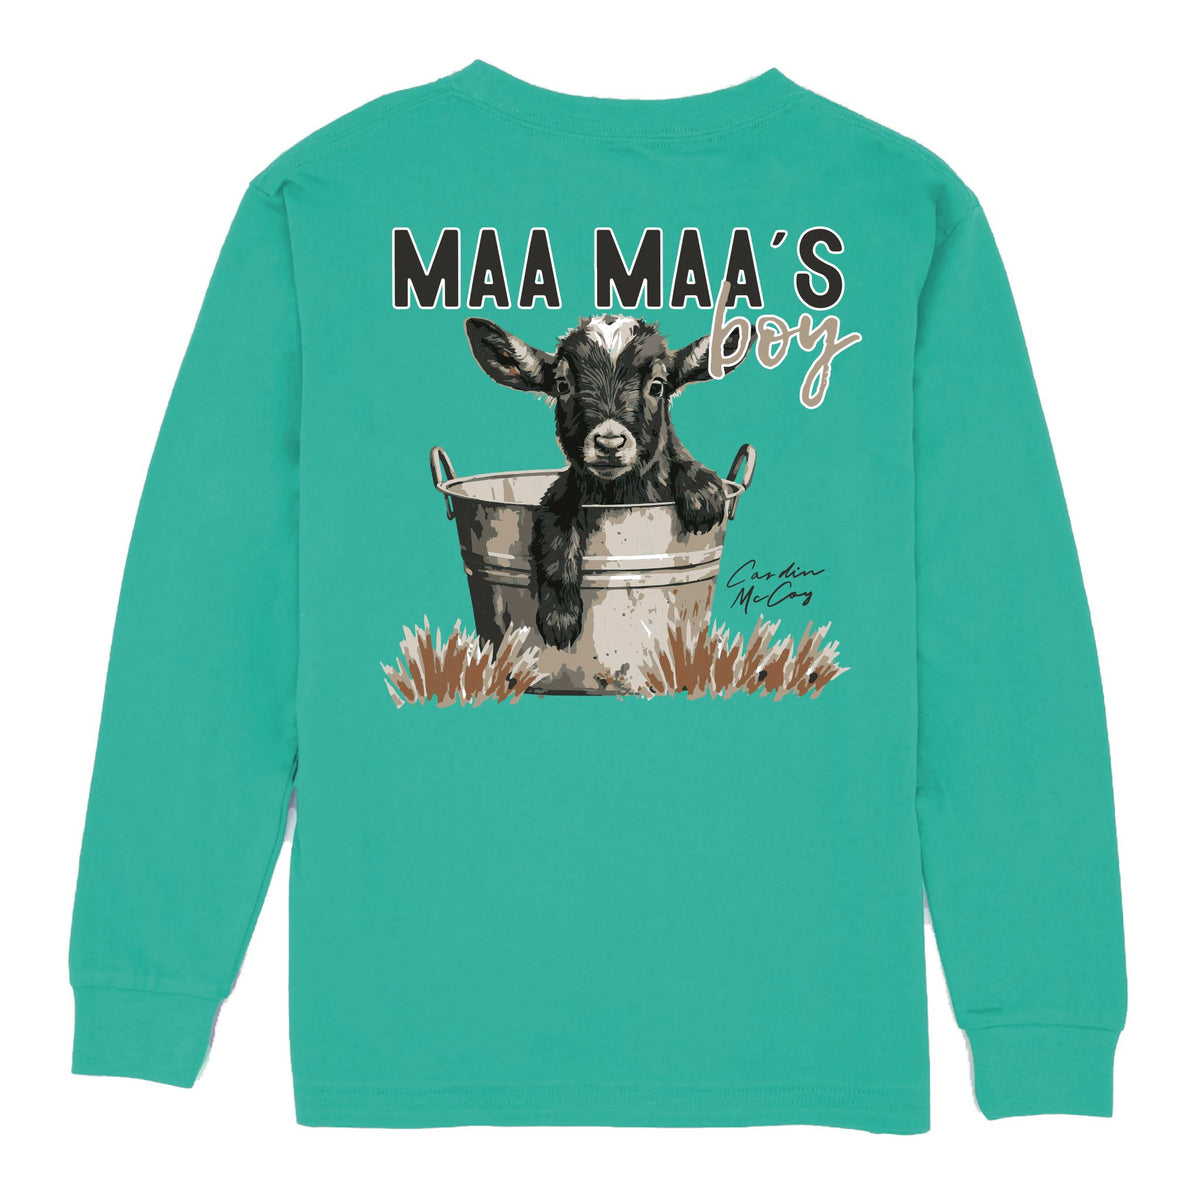 Kids' Maa Maa's Boy Long Sleeve Pocket Tee Long Sleeve T-Shirt Cardin McCoy Teal XXS (2/3) 